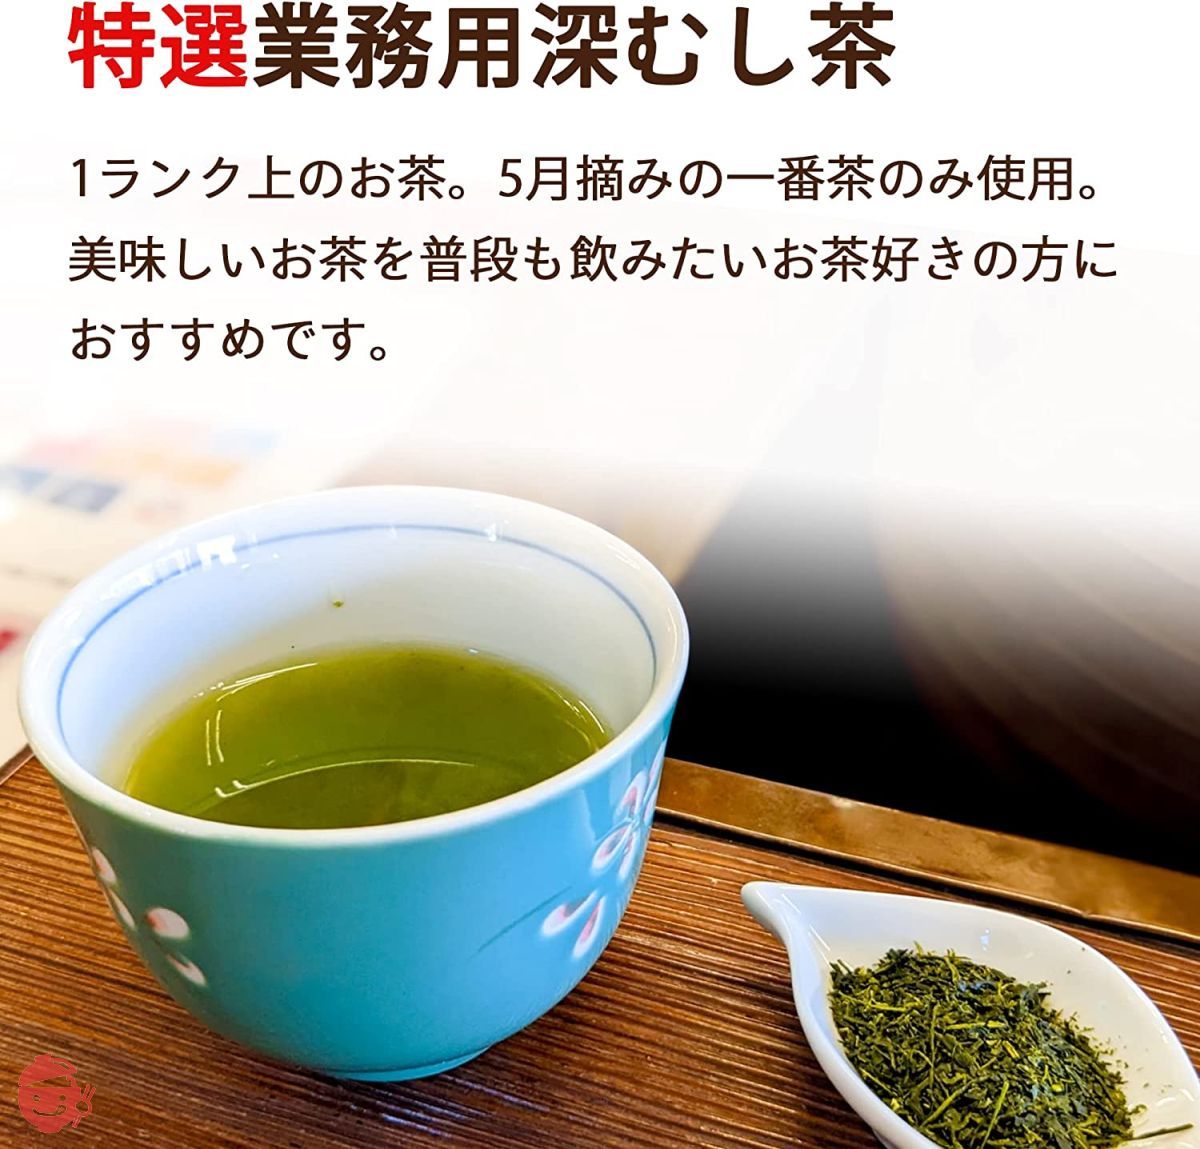 新罗哈田园静冈深蒸新茶大地之诗特选商用深蒸茶1kg 茶叶绿茶茶叶日本茶 